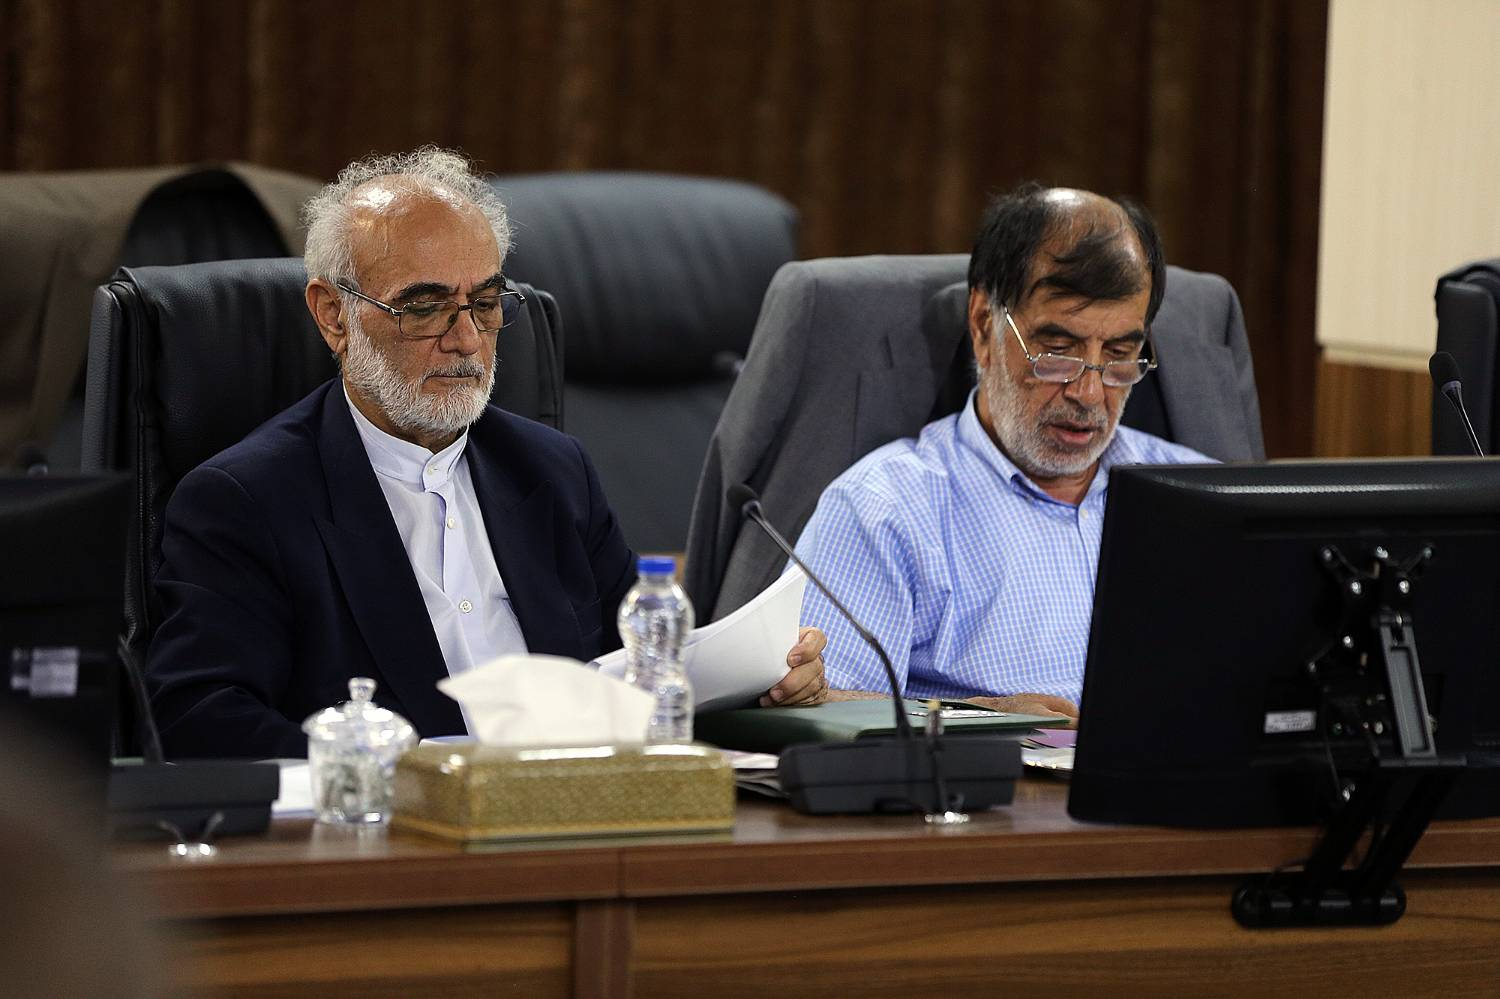 مجمع تشخیص «تناسبی شدن انتخابات» را مغایر سیاست‌های کلی دانست